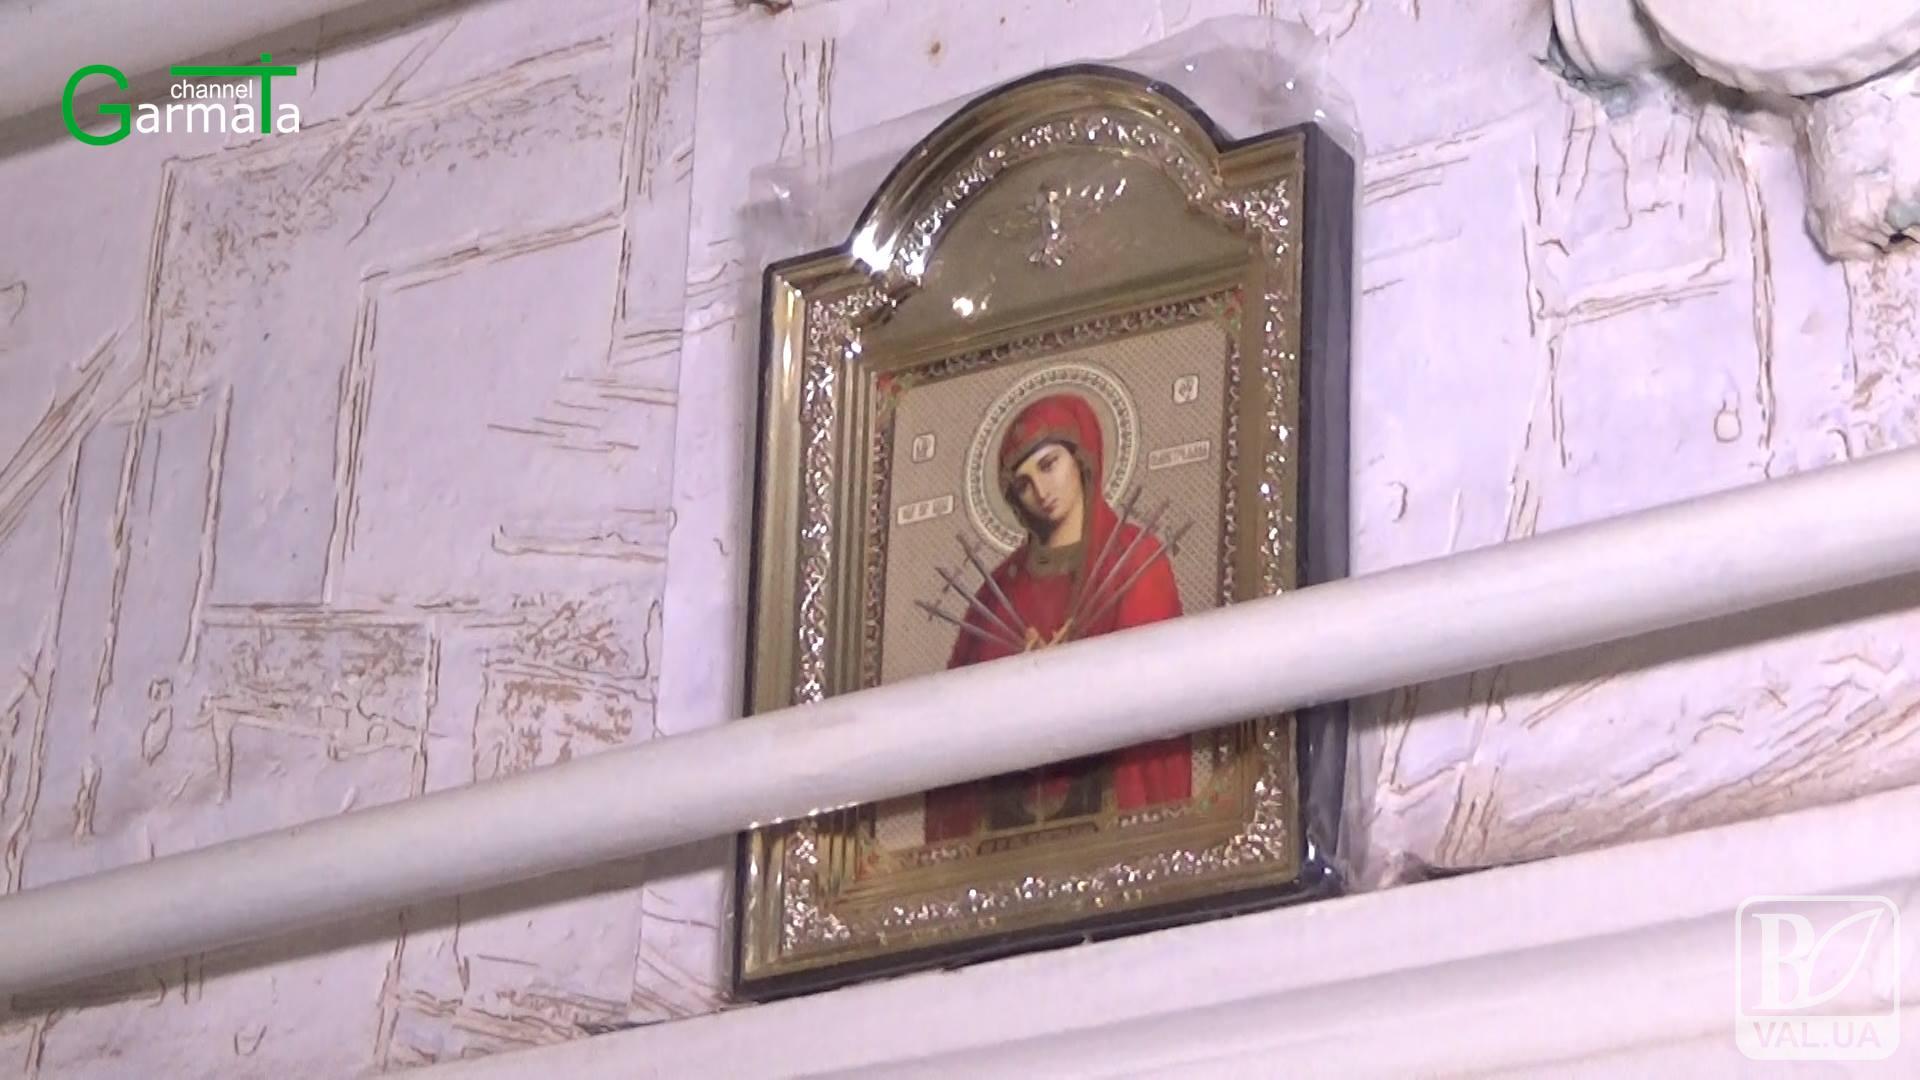  Зухвале пограбування: на Чернігівщині злодії вдерлися в хату священника. ВІДЕО